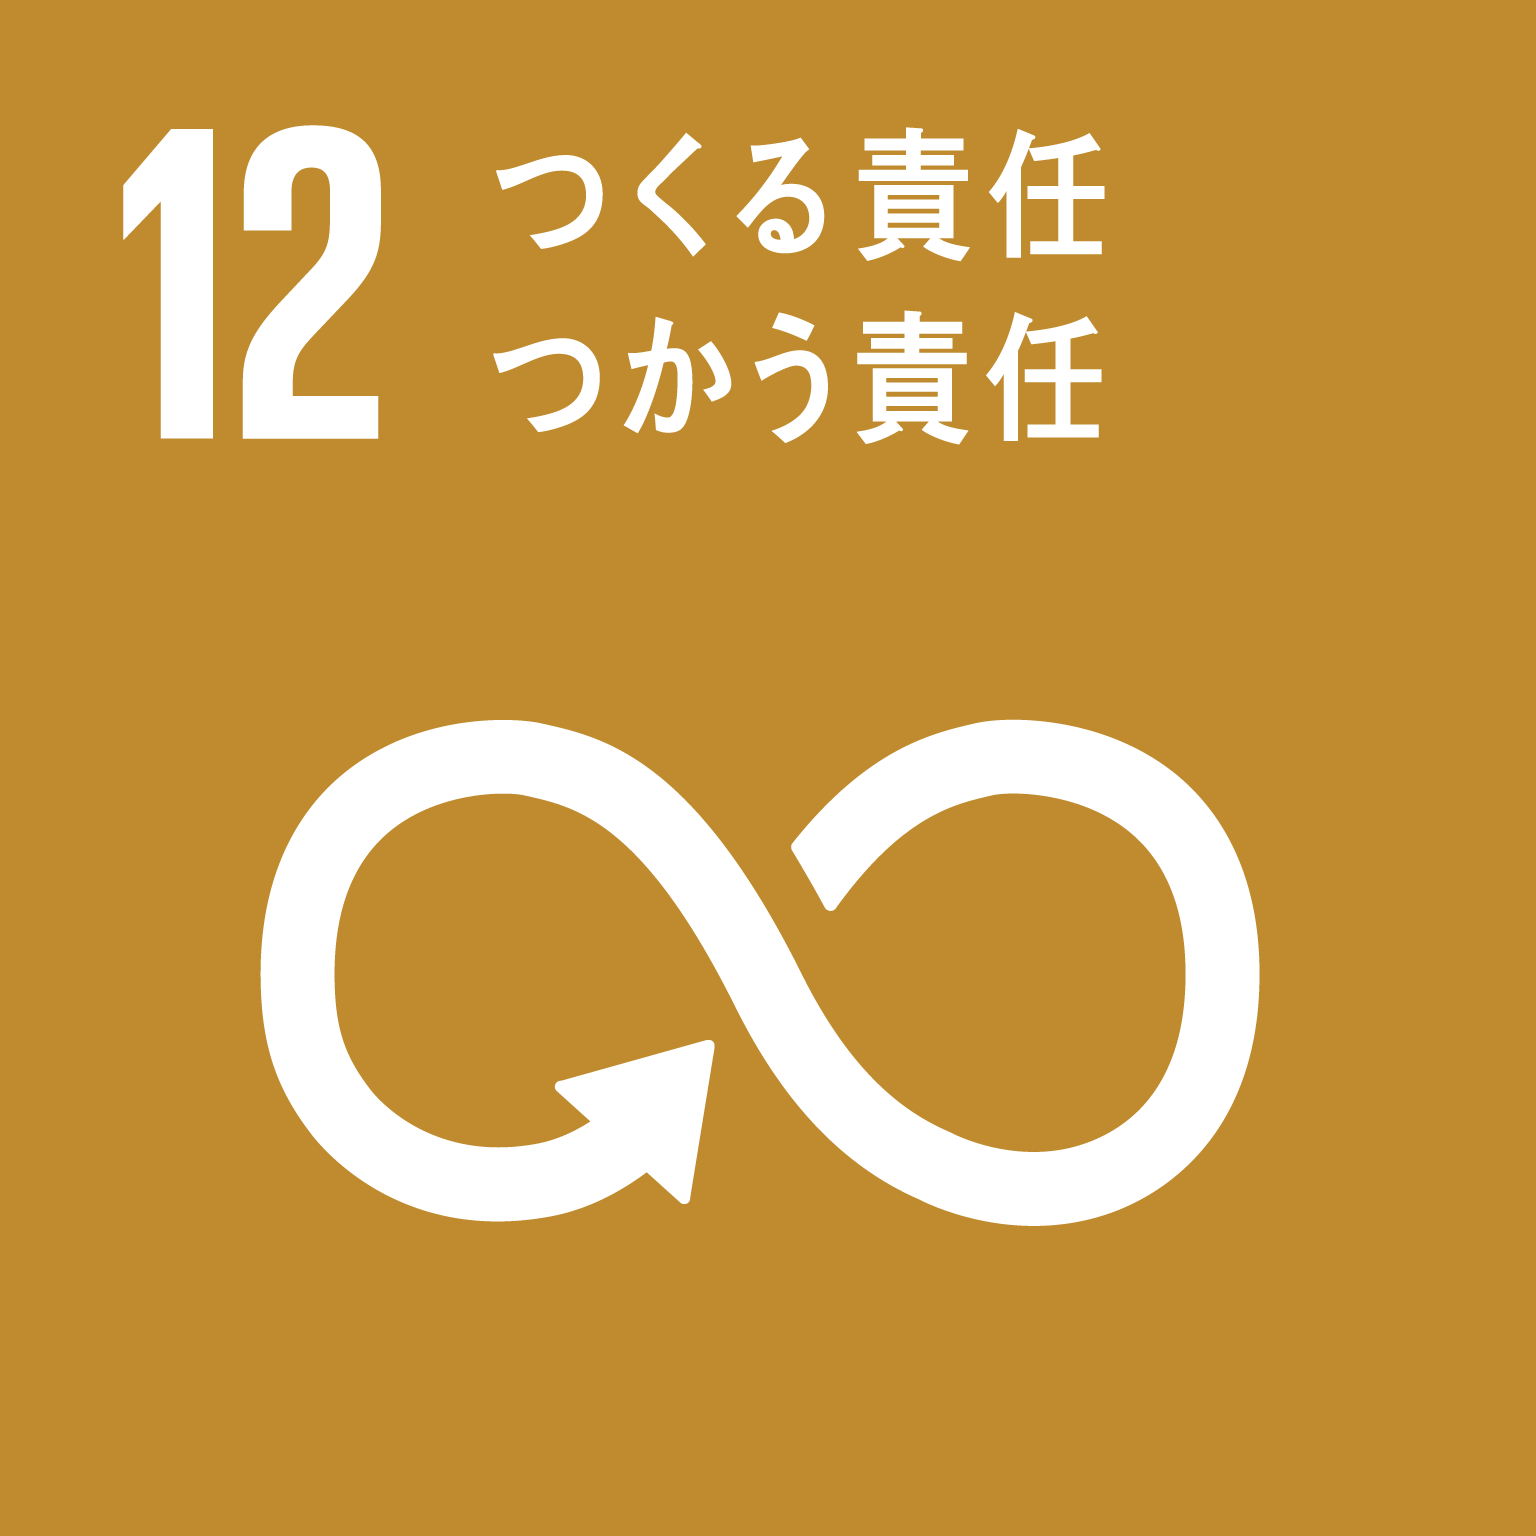 【SDGsロゴ】1つくる責任　つかう責任